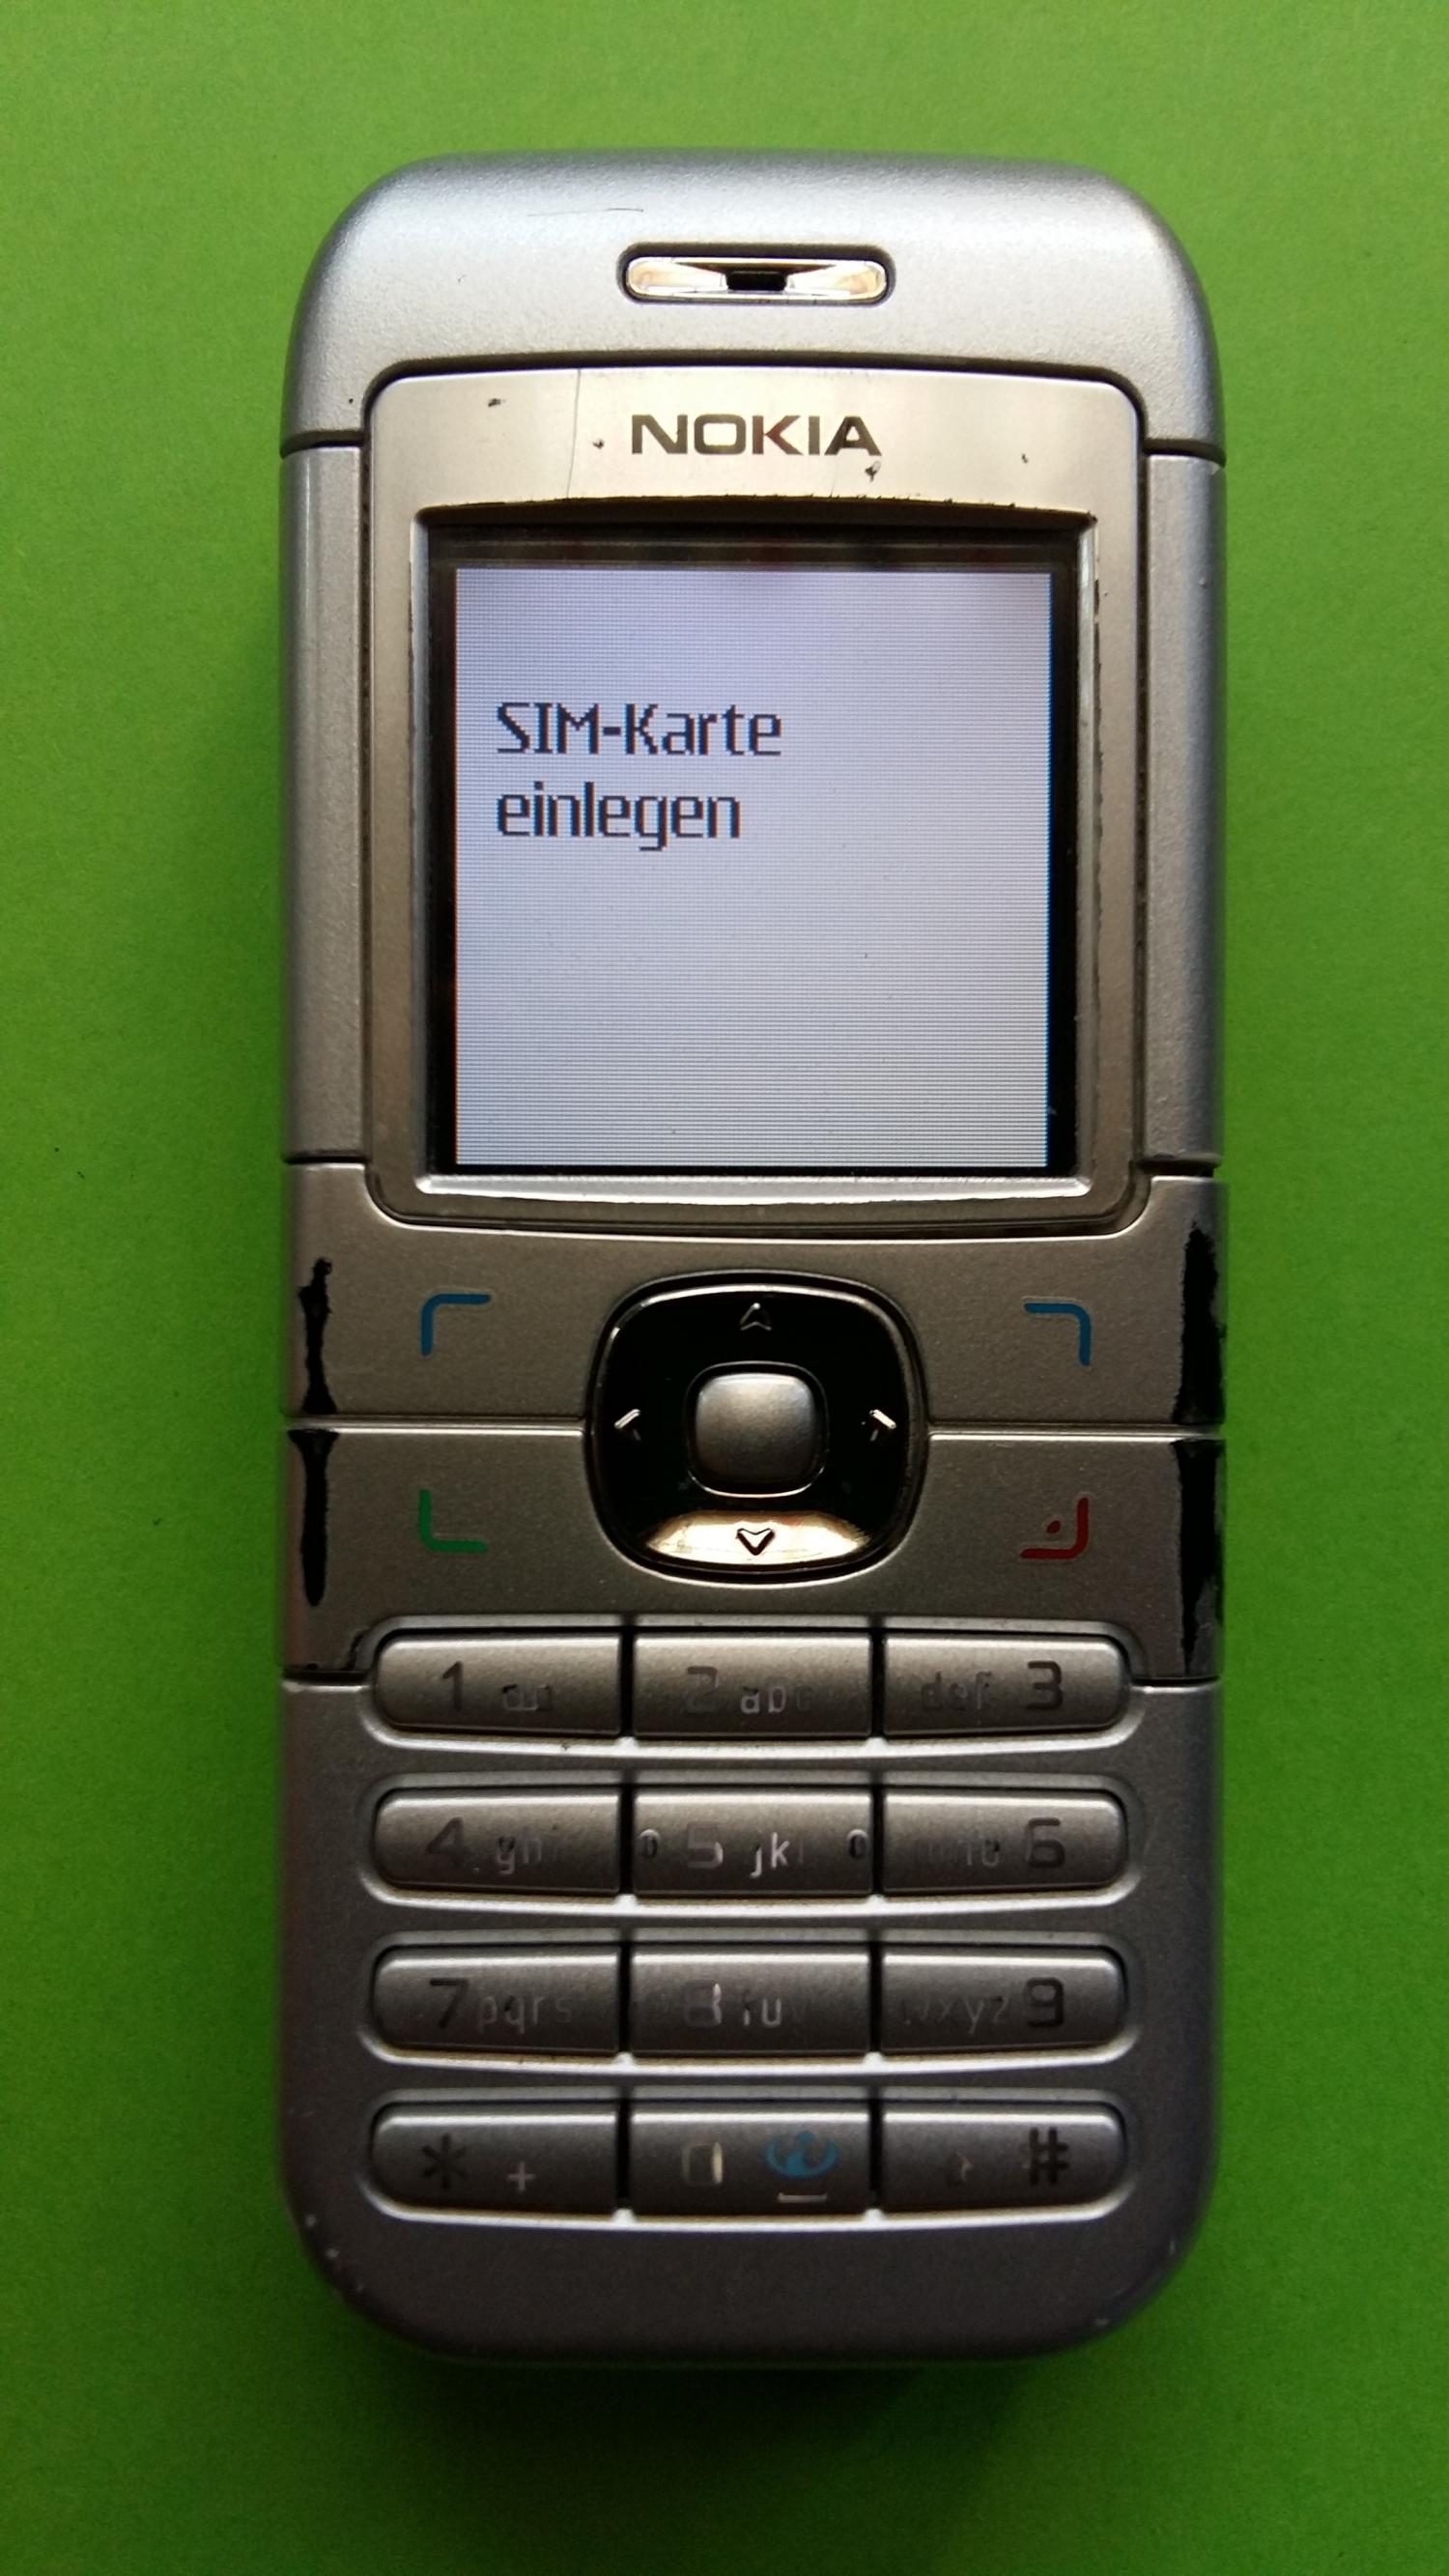 image-7328903-Nokia 6030 (1)1.jpg